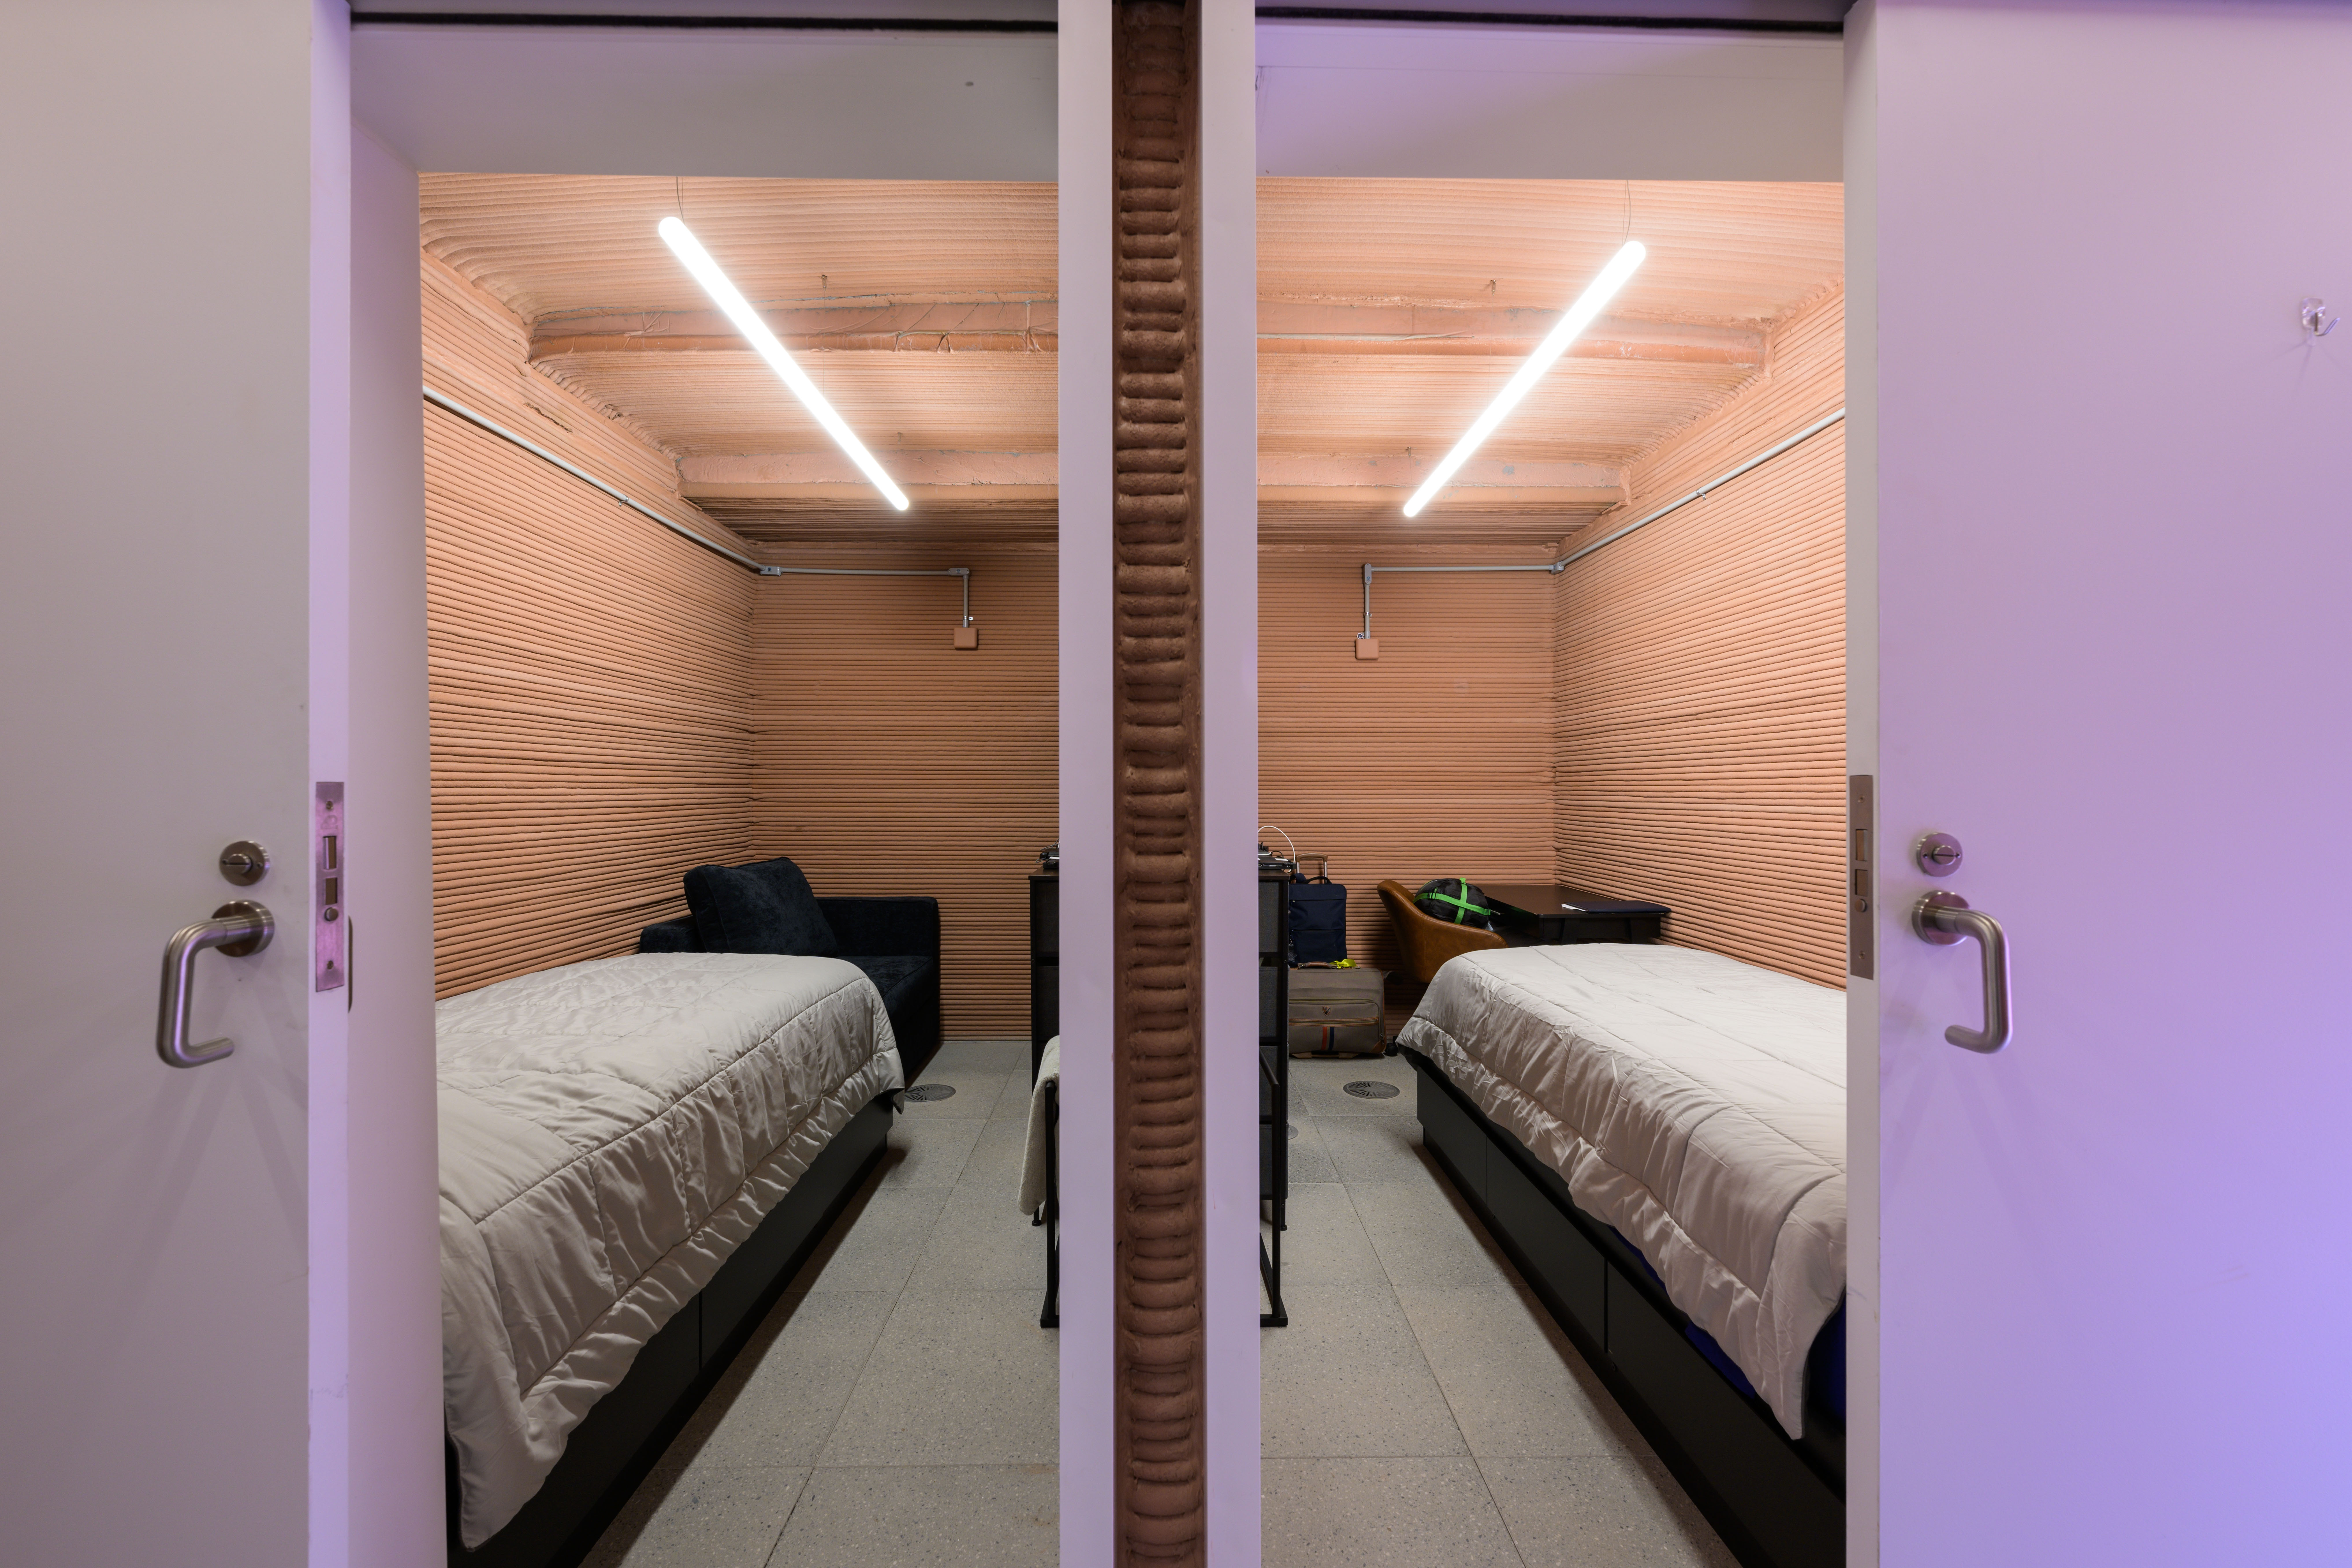 Cuatro dormitorios tiene el hábitat de los tripulantes (PHOTOGRAPHER: BILL STAFFORD)